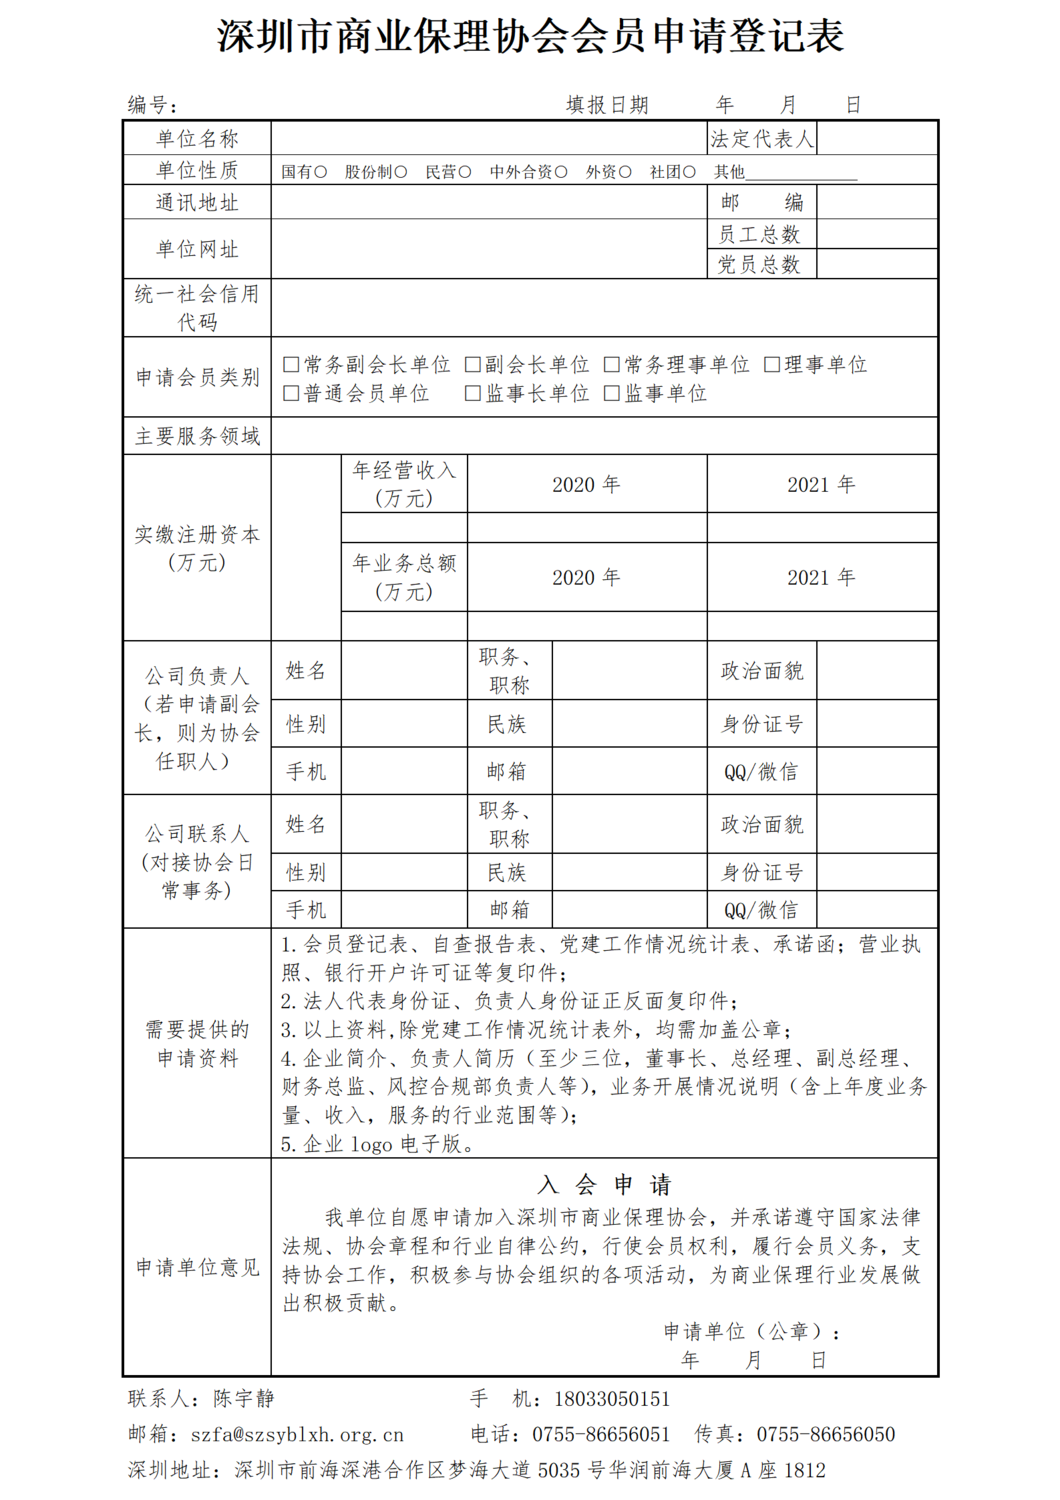 1-SZFA深圳市商业保理协会入会会员登记表_01.png